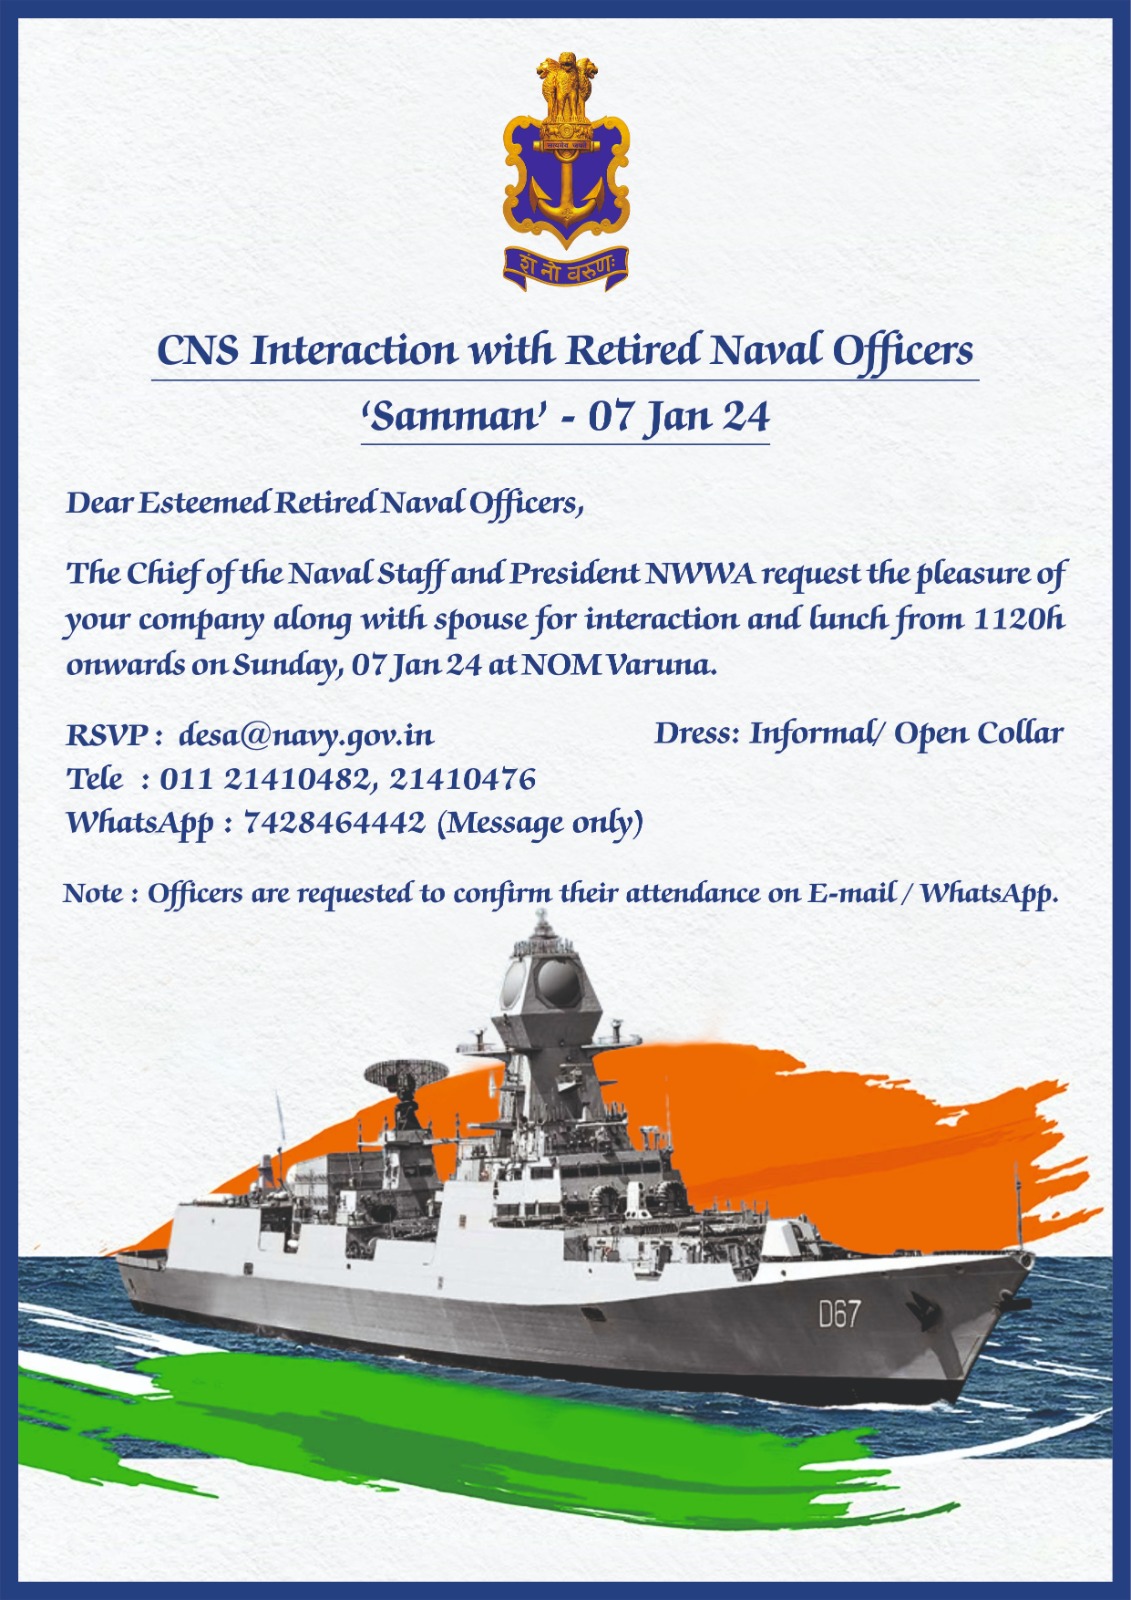 सेवानिवृत्त नौसेना अधिकारियों के साथ सीएनएस बातचीत 'सम्मान' - 07 जनवरी 24